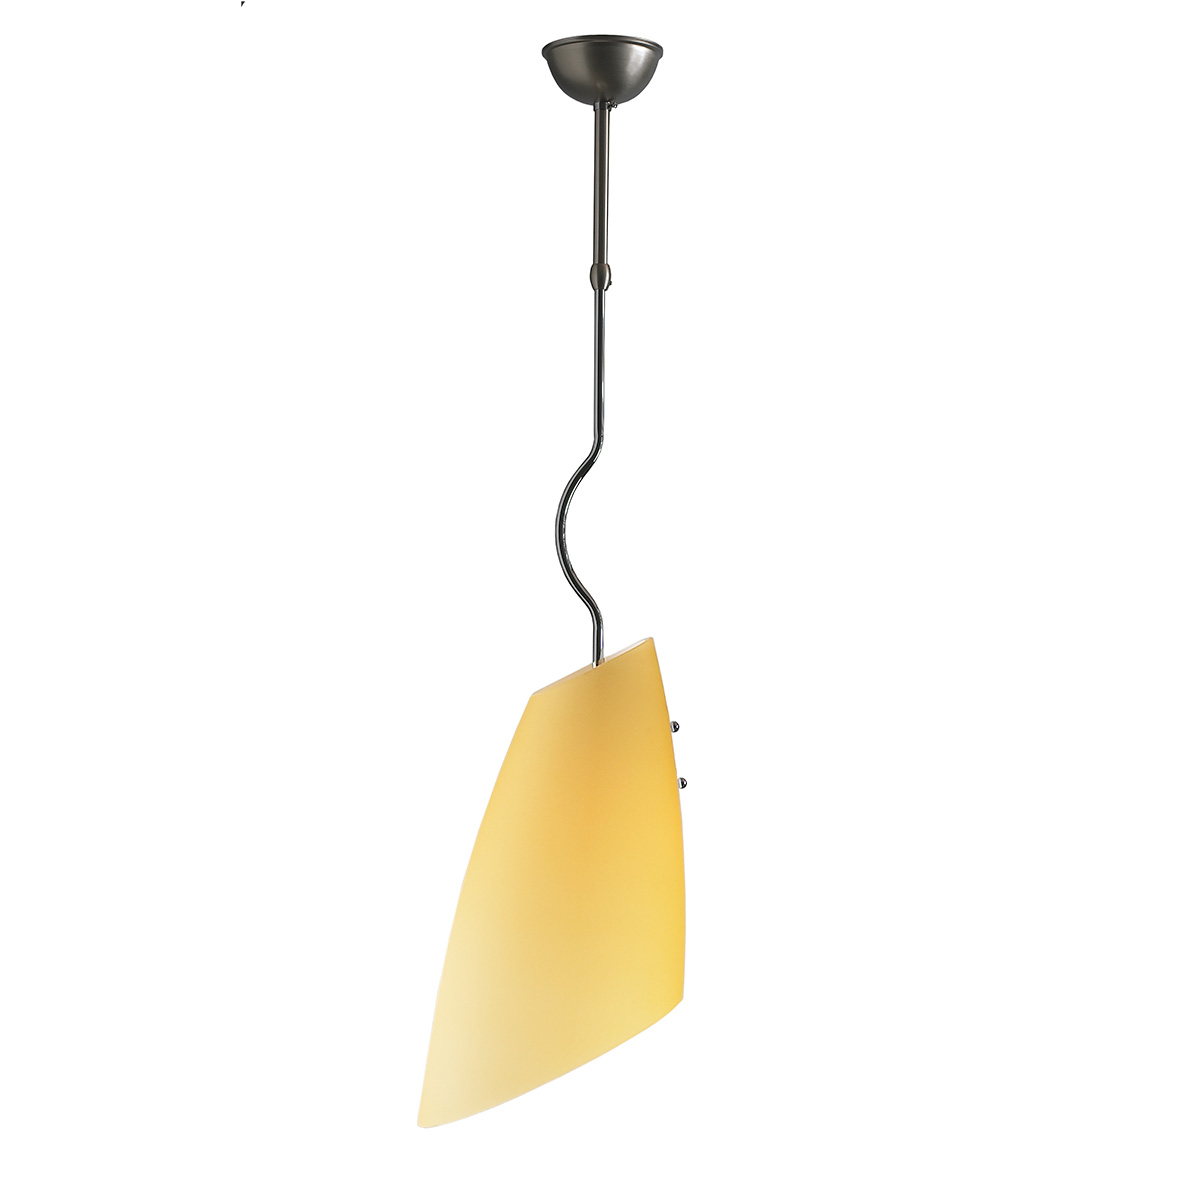 Μοντέρνο φωτιστικό Μουράνο DONNA modern suspension lamp